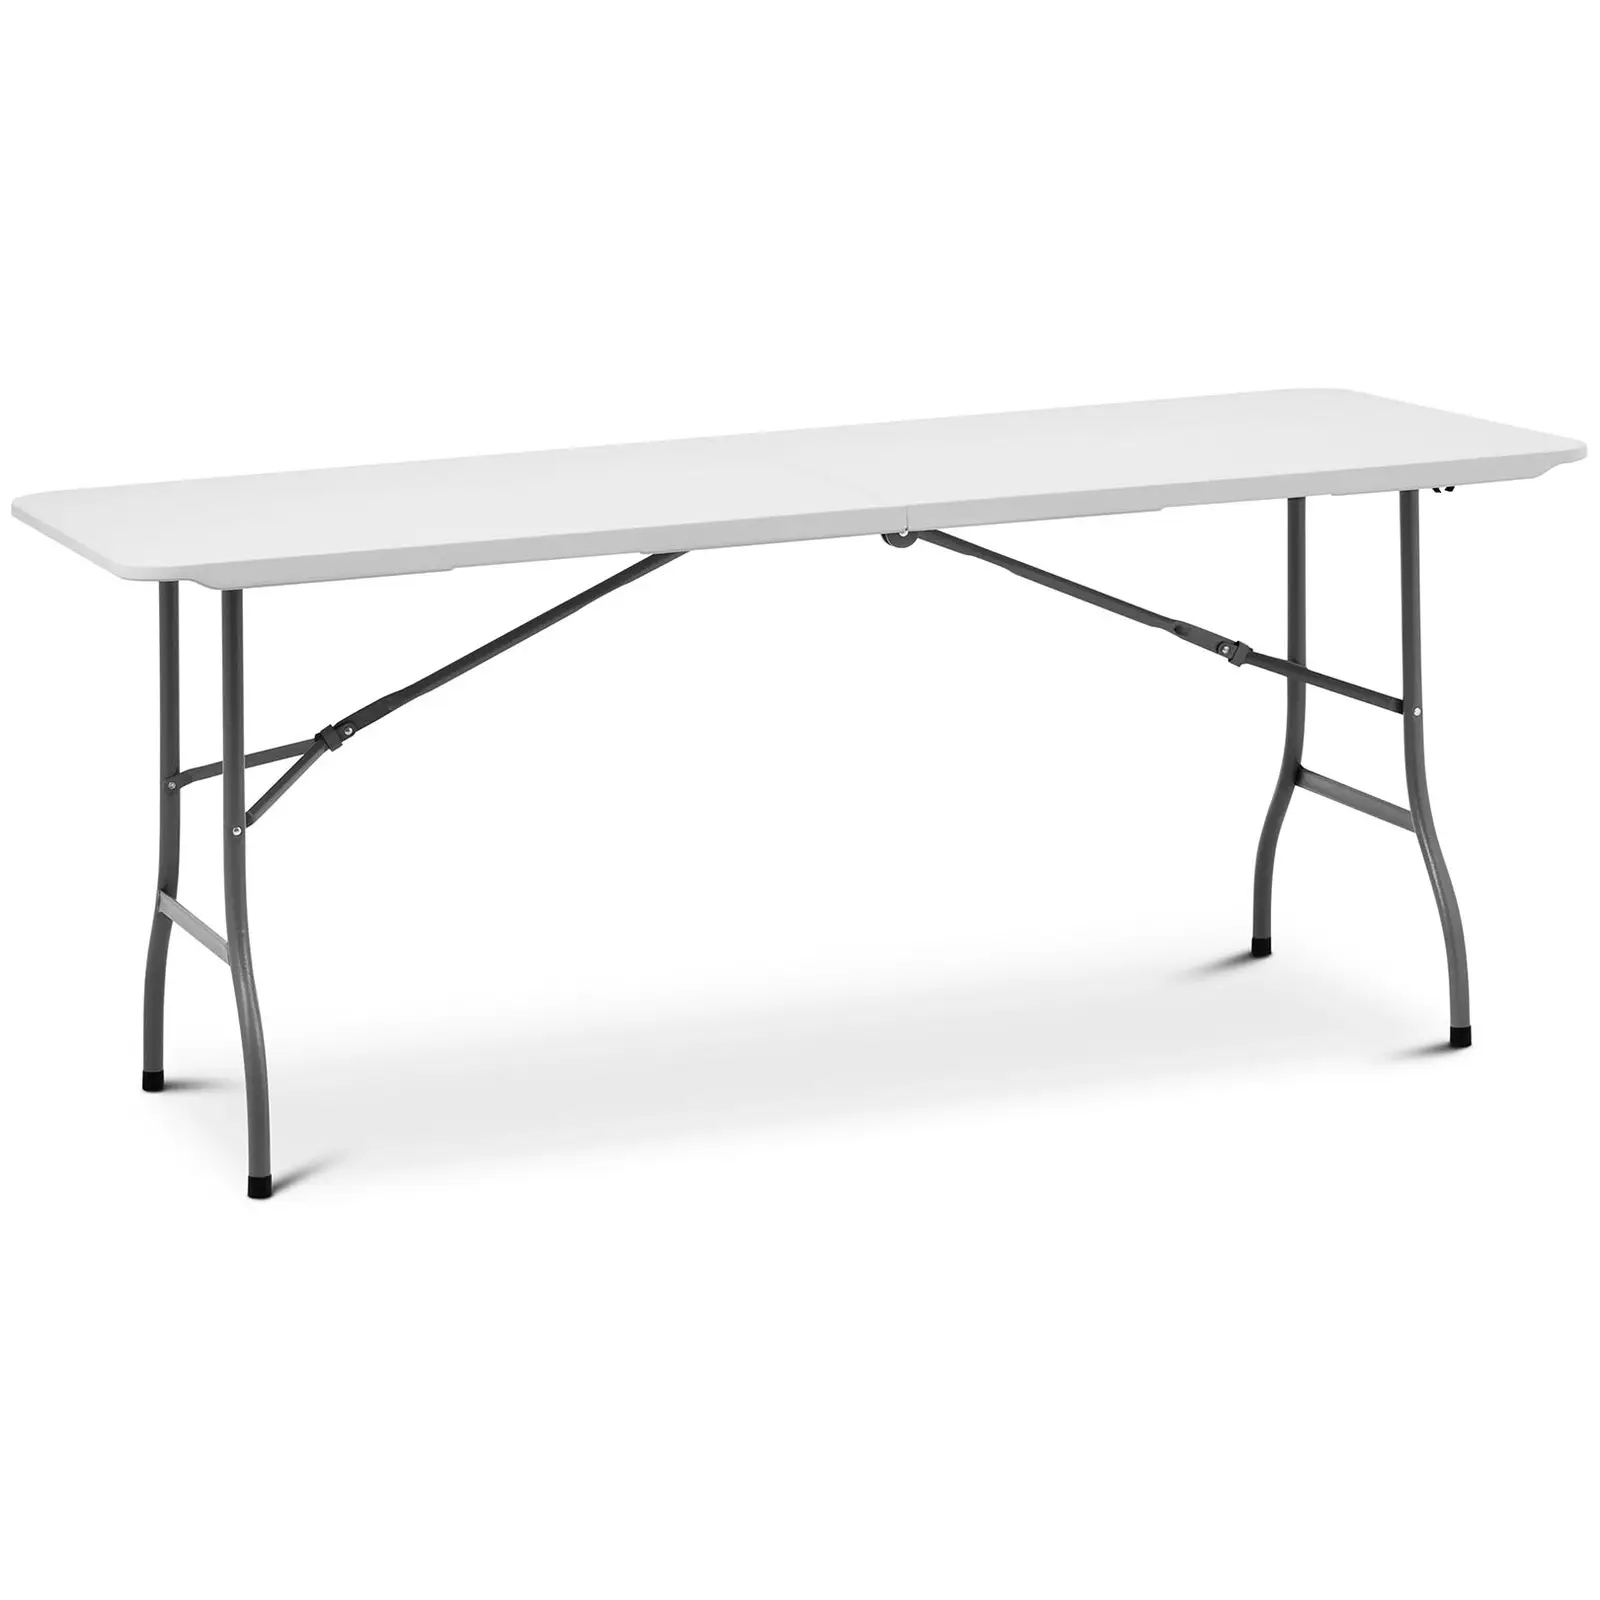 Összecsukható asztal - 1800 x 750 x 740 mm - Royal Catering - 150 kg - kültéri/beltéri - Fehér